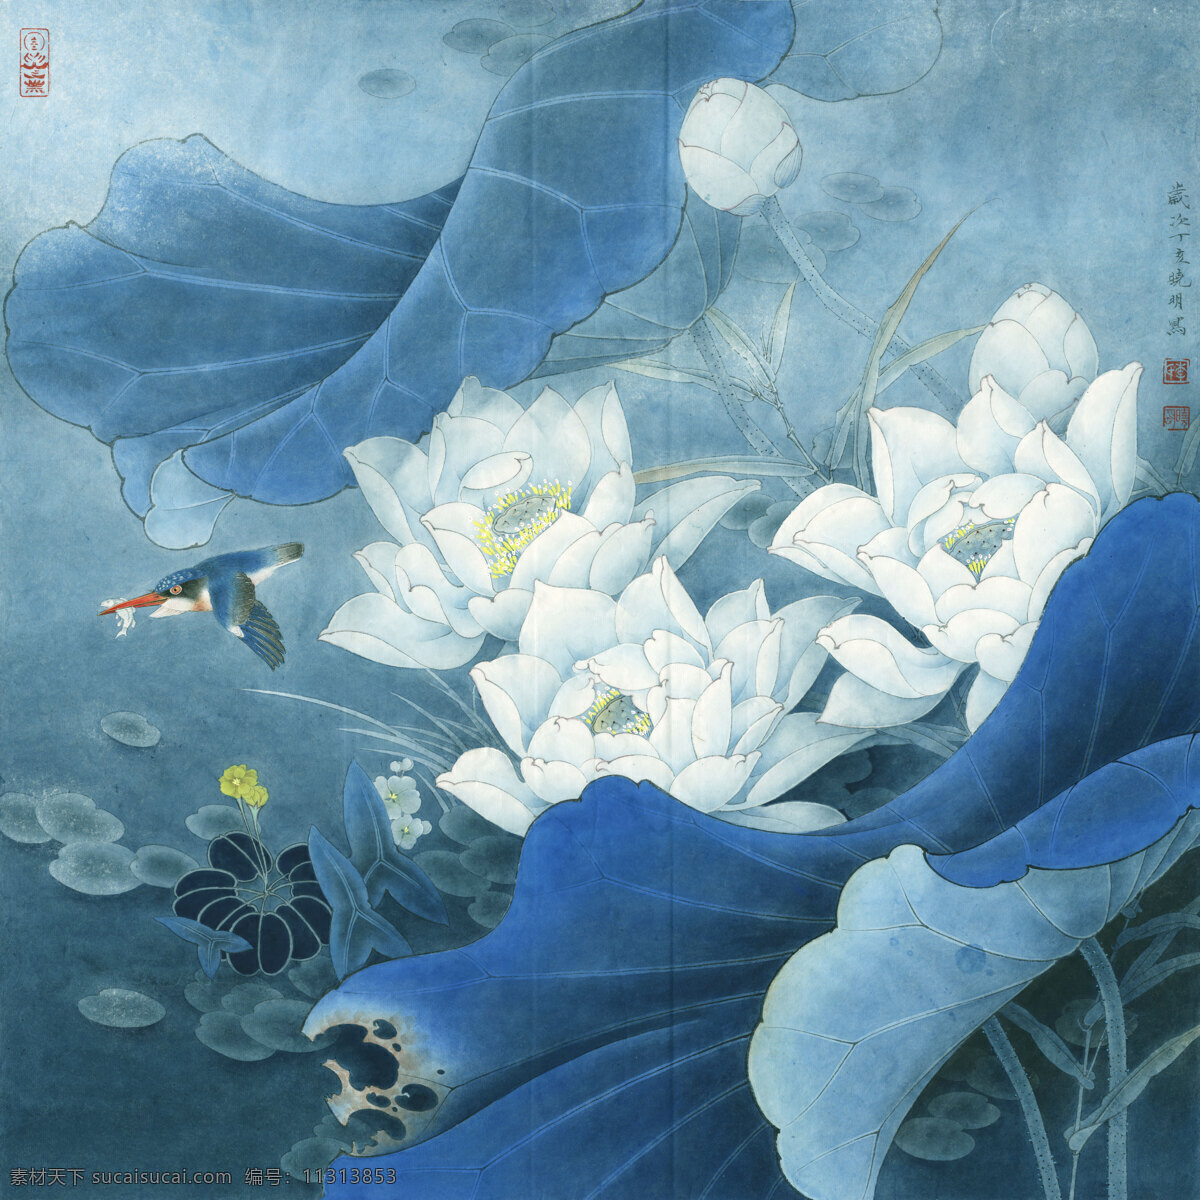 白荷蓝翠 花鸟画 设计素材 花鸟画篇 中国画篇 书画美术 青色 天蓝色